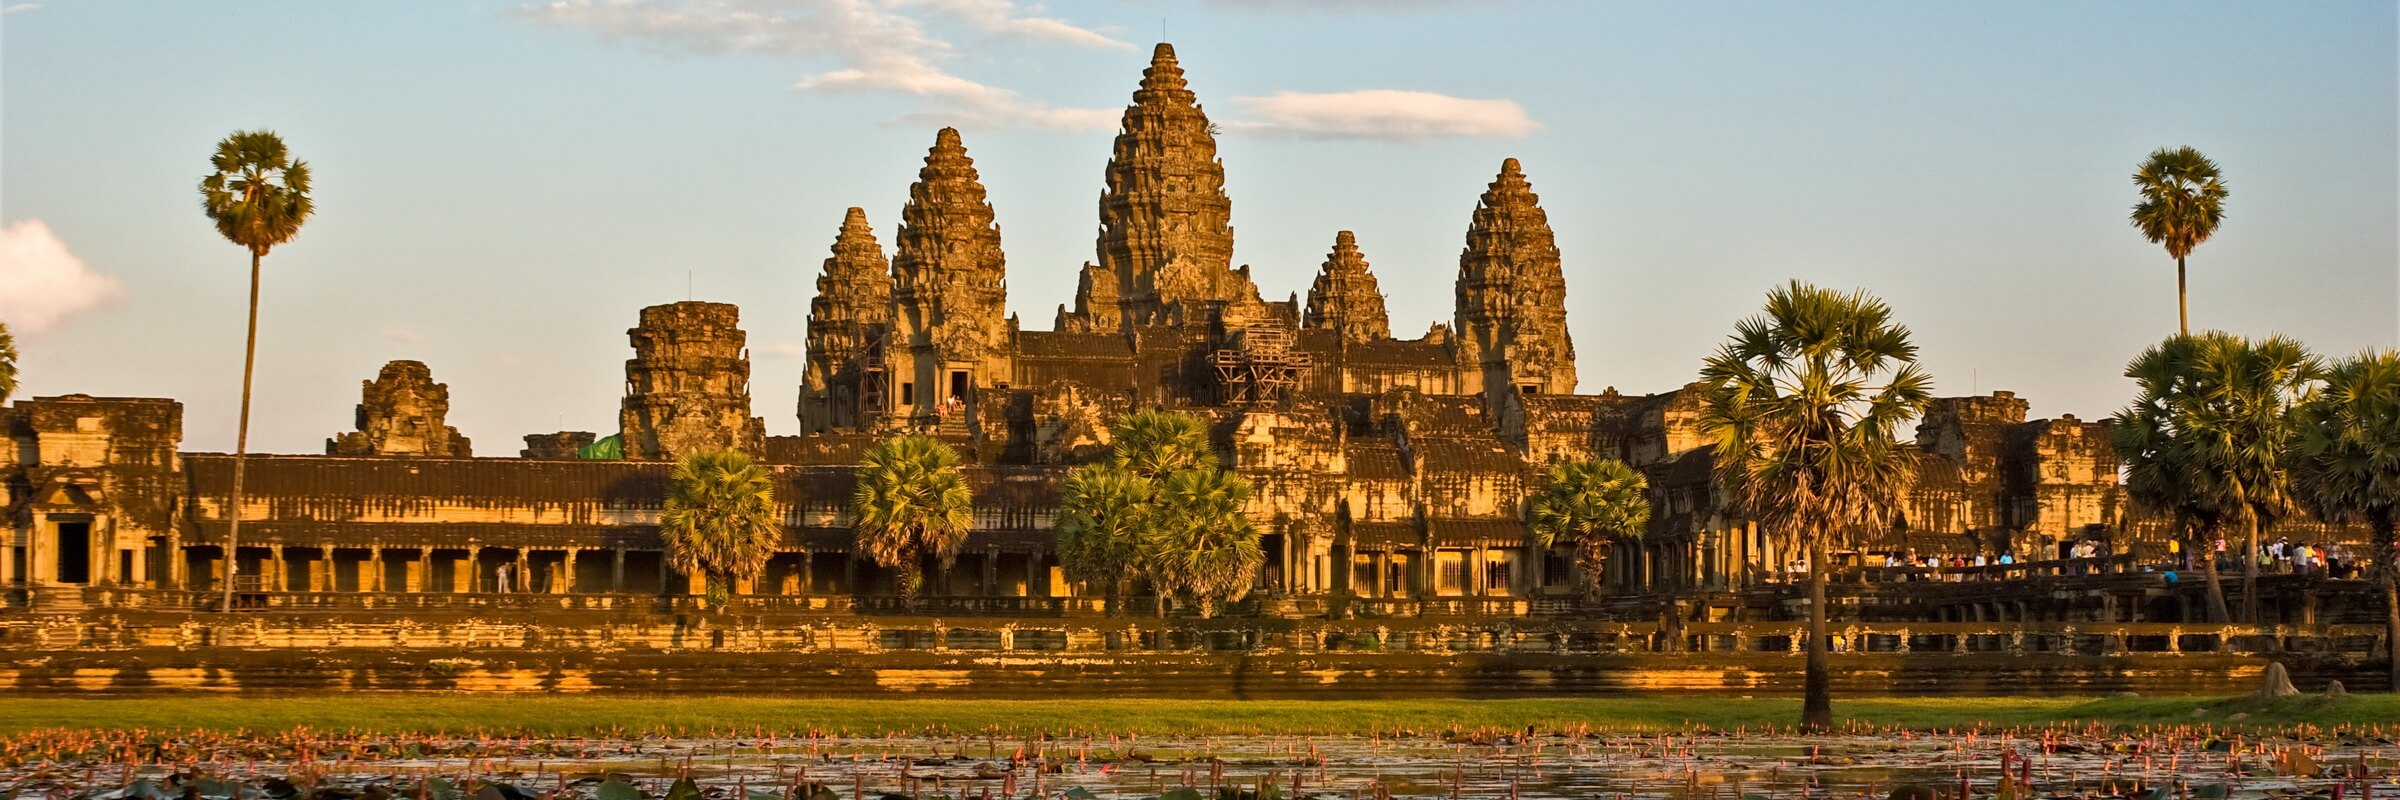 Die beeindruckende Tempelanlage Angkor Wat ist die mit Abstand bekannteste in Kambodscha.